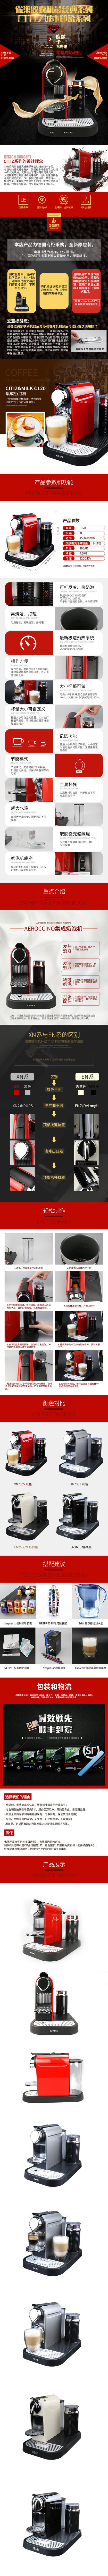 淘宝美工阳迪Nespresso雀巢咖啡机C120胶囊咖啡机详情作品